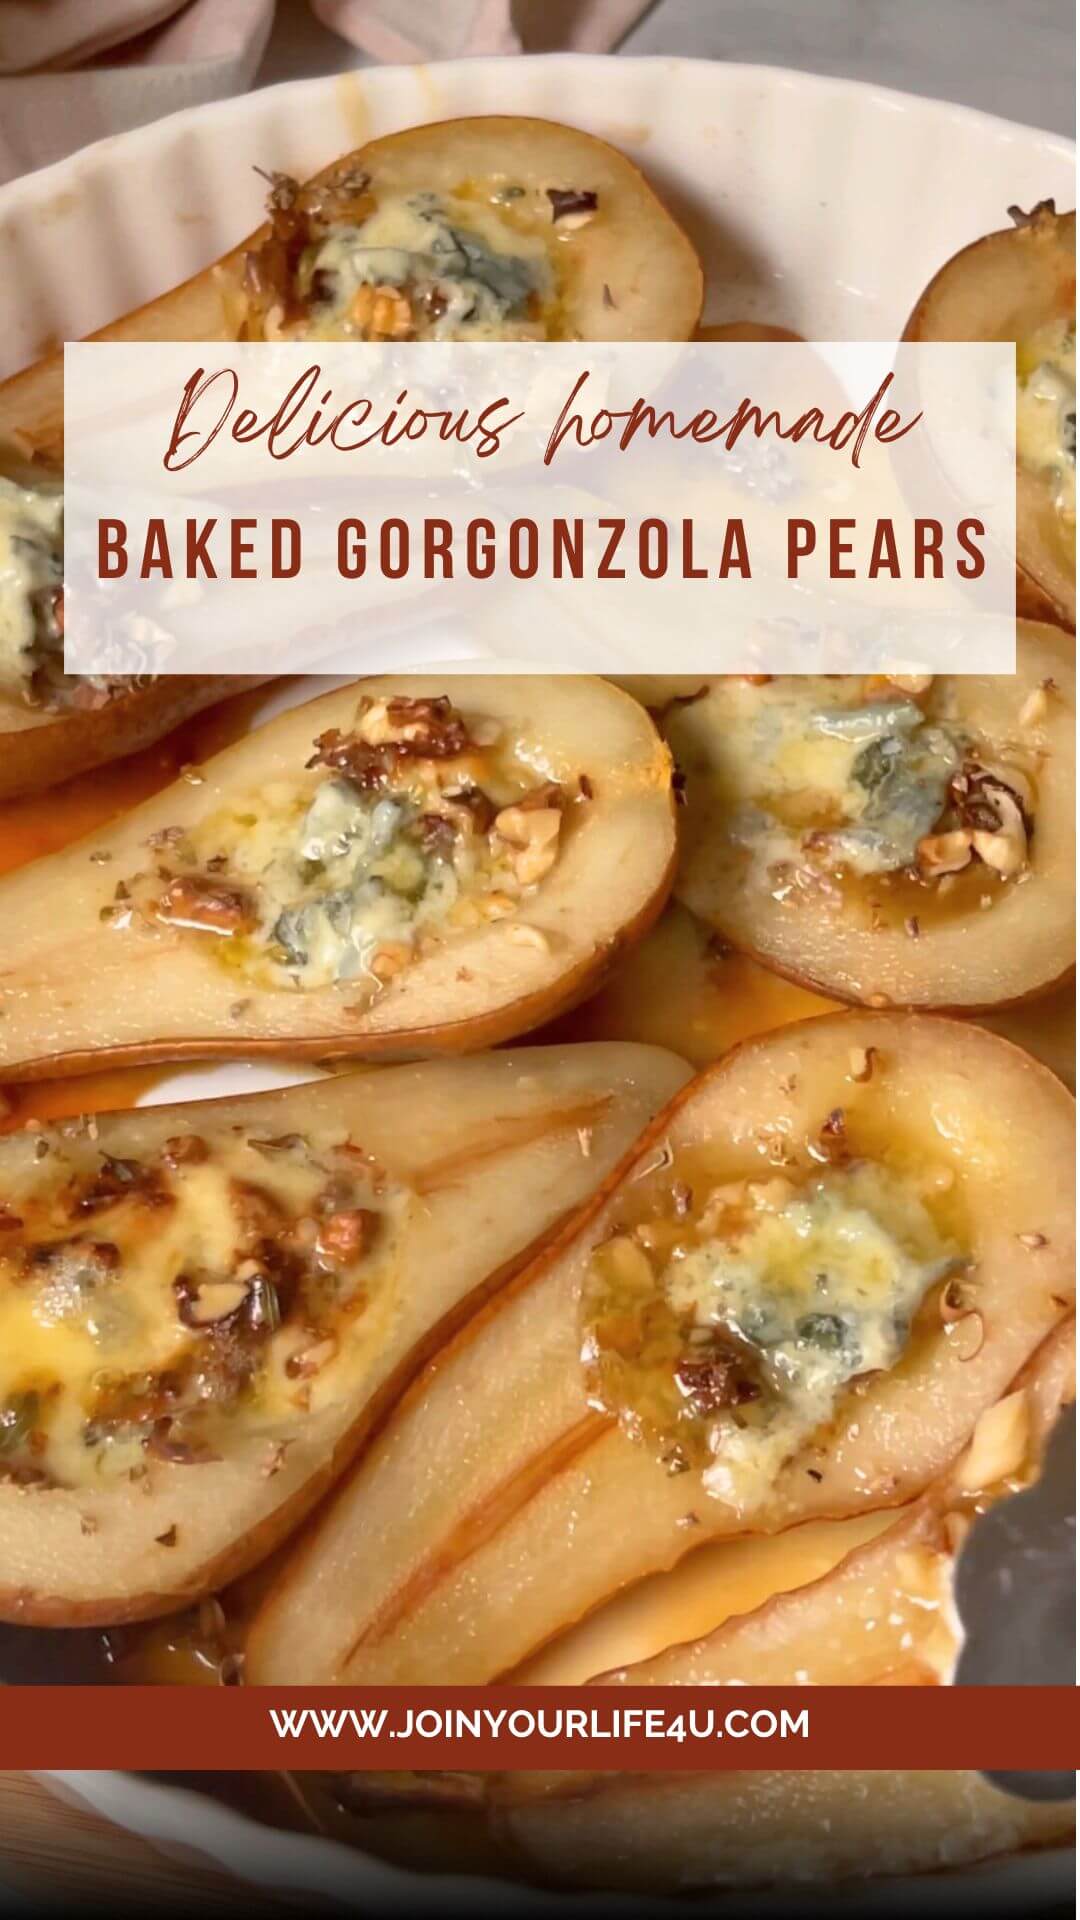 Baked Gorgonzola Pears